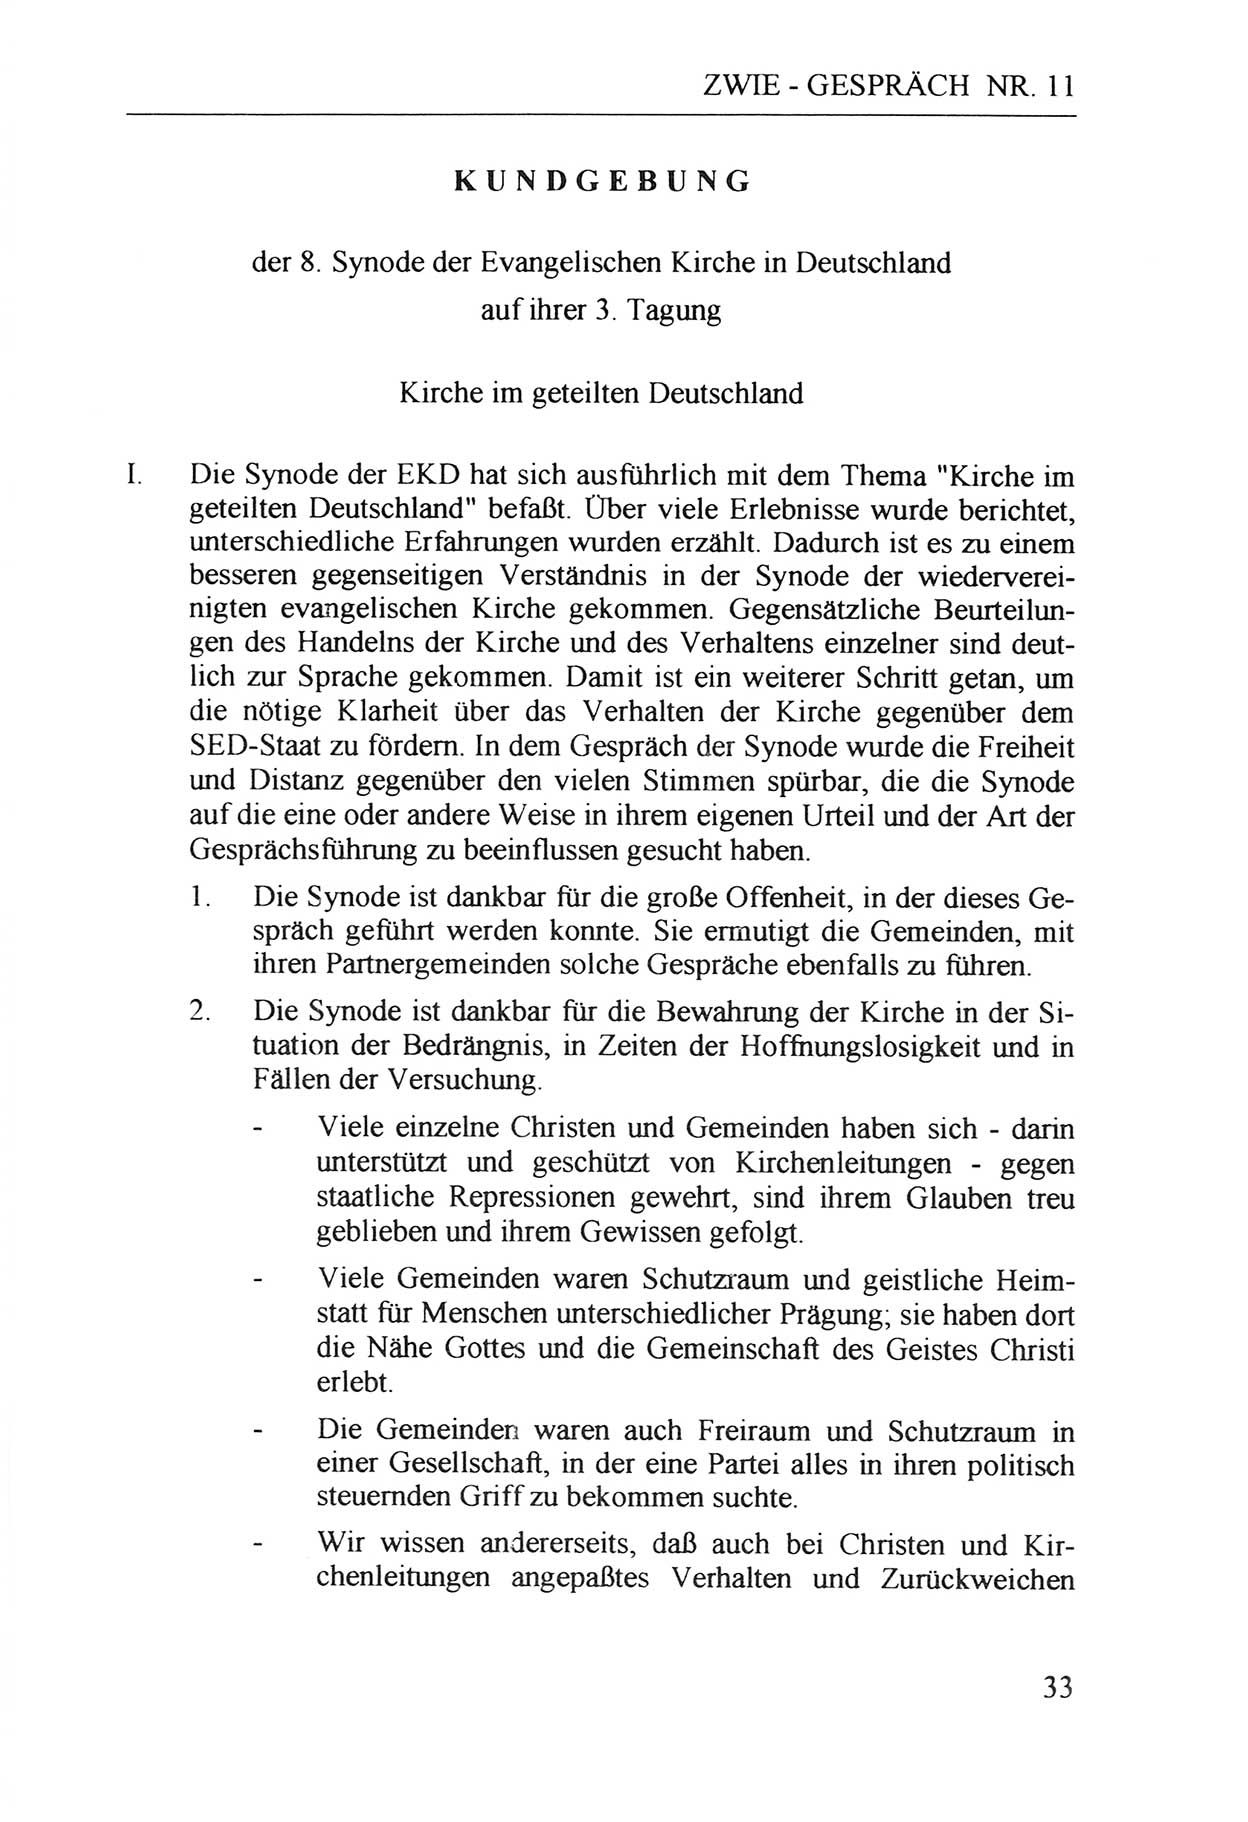 Zwie-Gespräch, Beiträge zur Aufarbeitung der Staatssicherheits-Vergangenheit [Deutsche Demokratische Republik (DDR)], Ausgabe Nr. 11, Berlin 1992, Seite 33 (Zwie-Gespr. Ausg. 11 1992, S. 33)